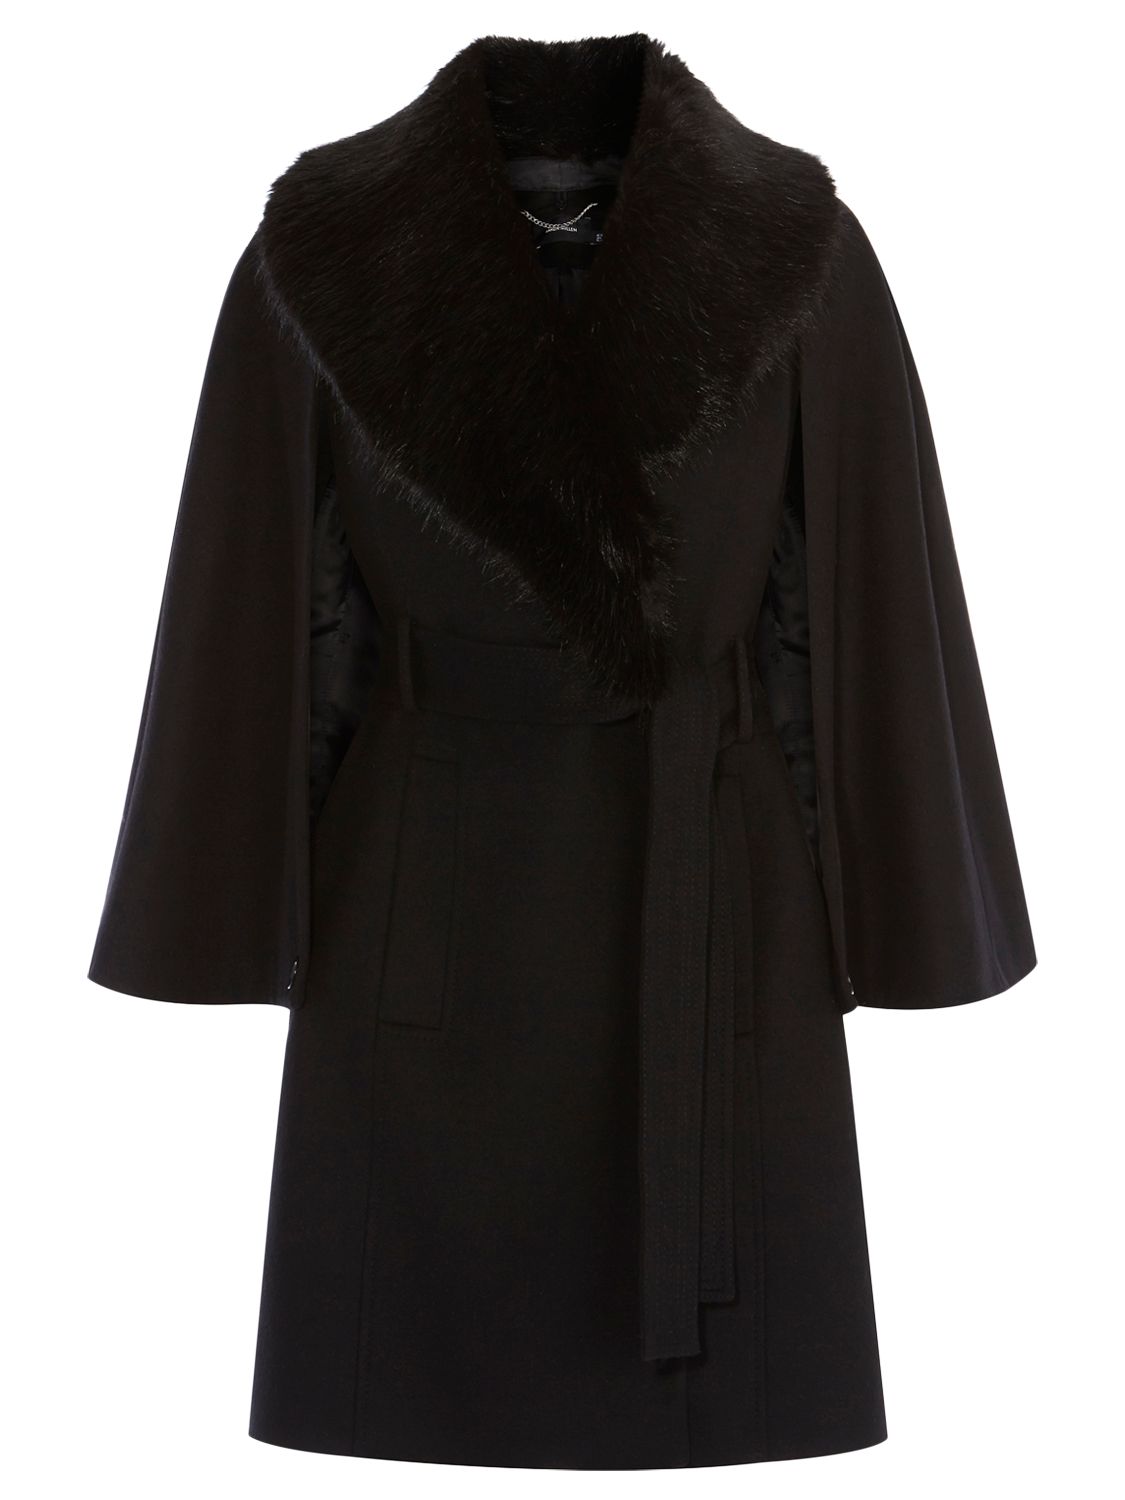 Karen Millen Investment Wool Coat, Black